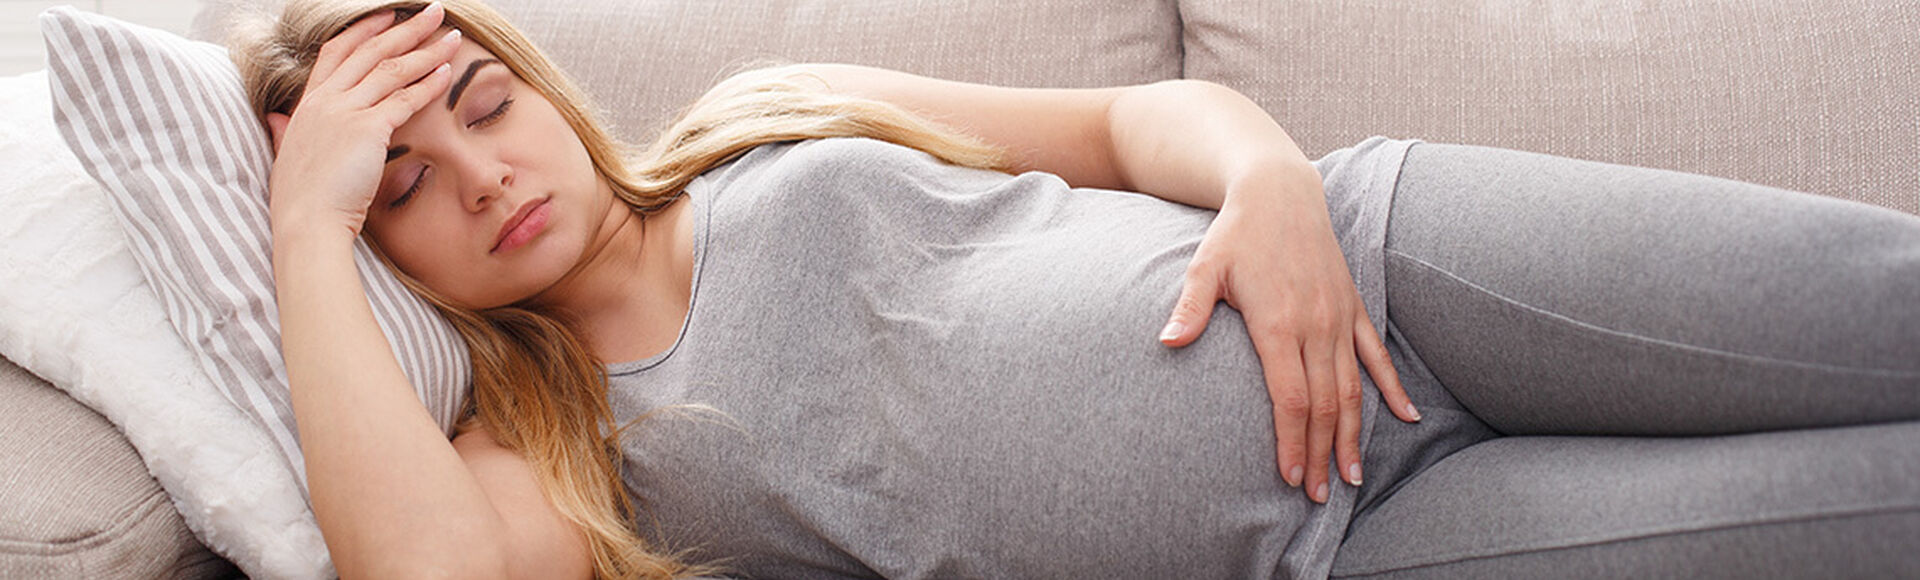 Los movimientos son más frecuentes en la semana 28 de embarazo | by Huggies Argentina